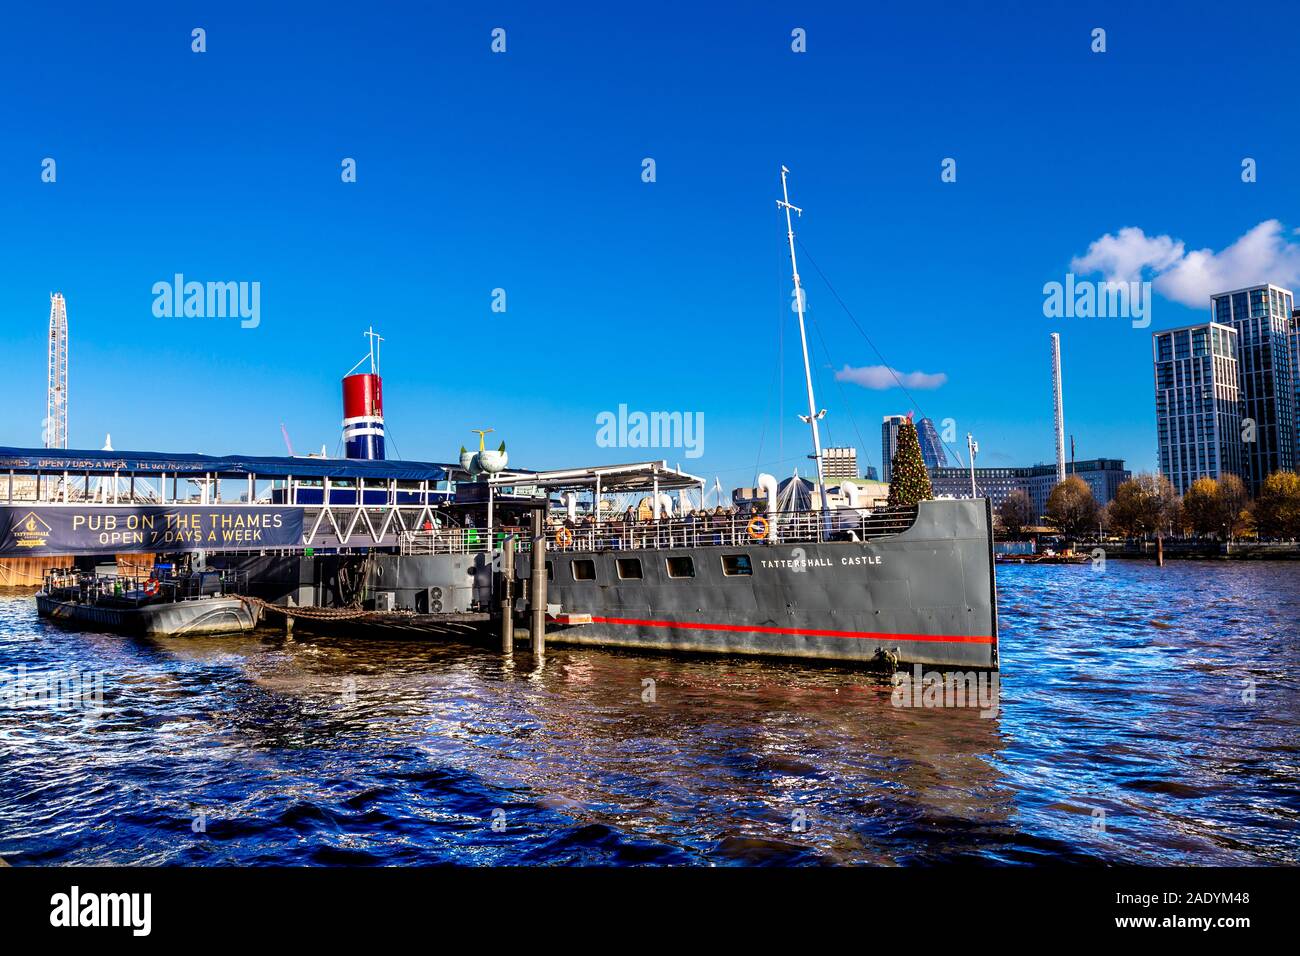 Tattershall Castle - pub flottante su una barca sul fiume Thames, London, Regno Unito Foto Stock